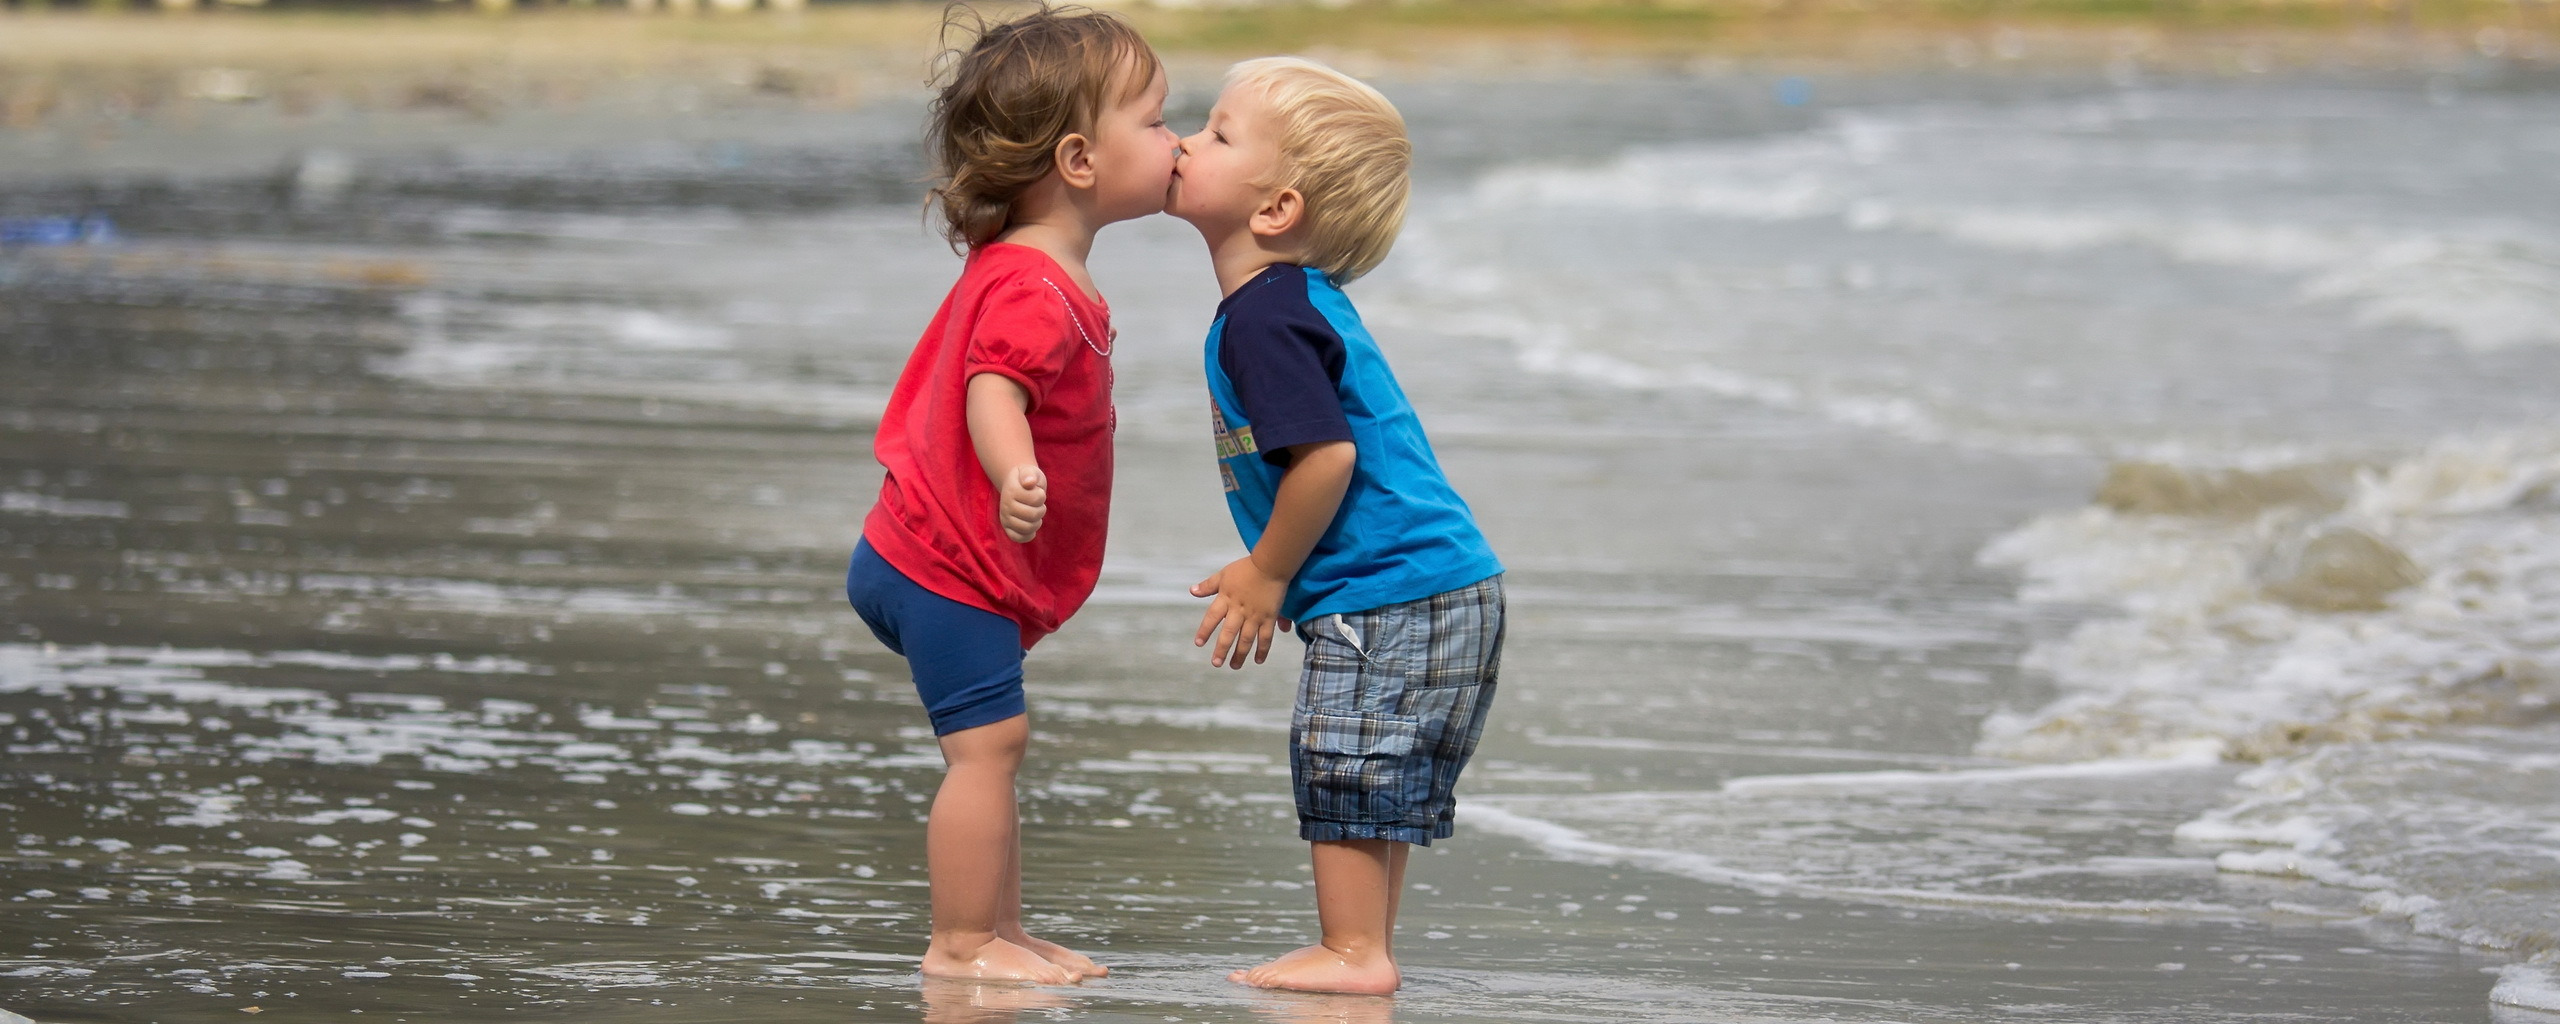 Хочу поцеловать мальчика. Любовь между детьми. Малыши целуются. Поцелуй картинка для детей. Детский поцелуй на пляже.